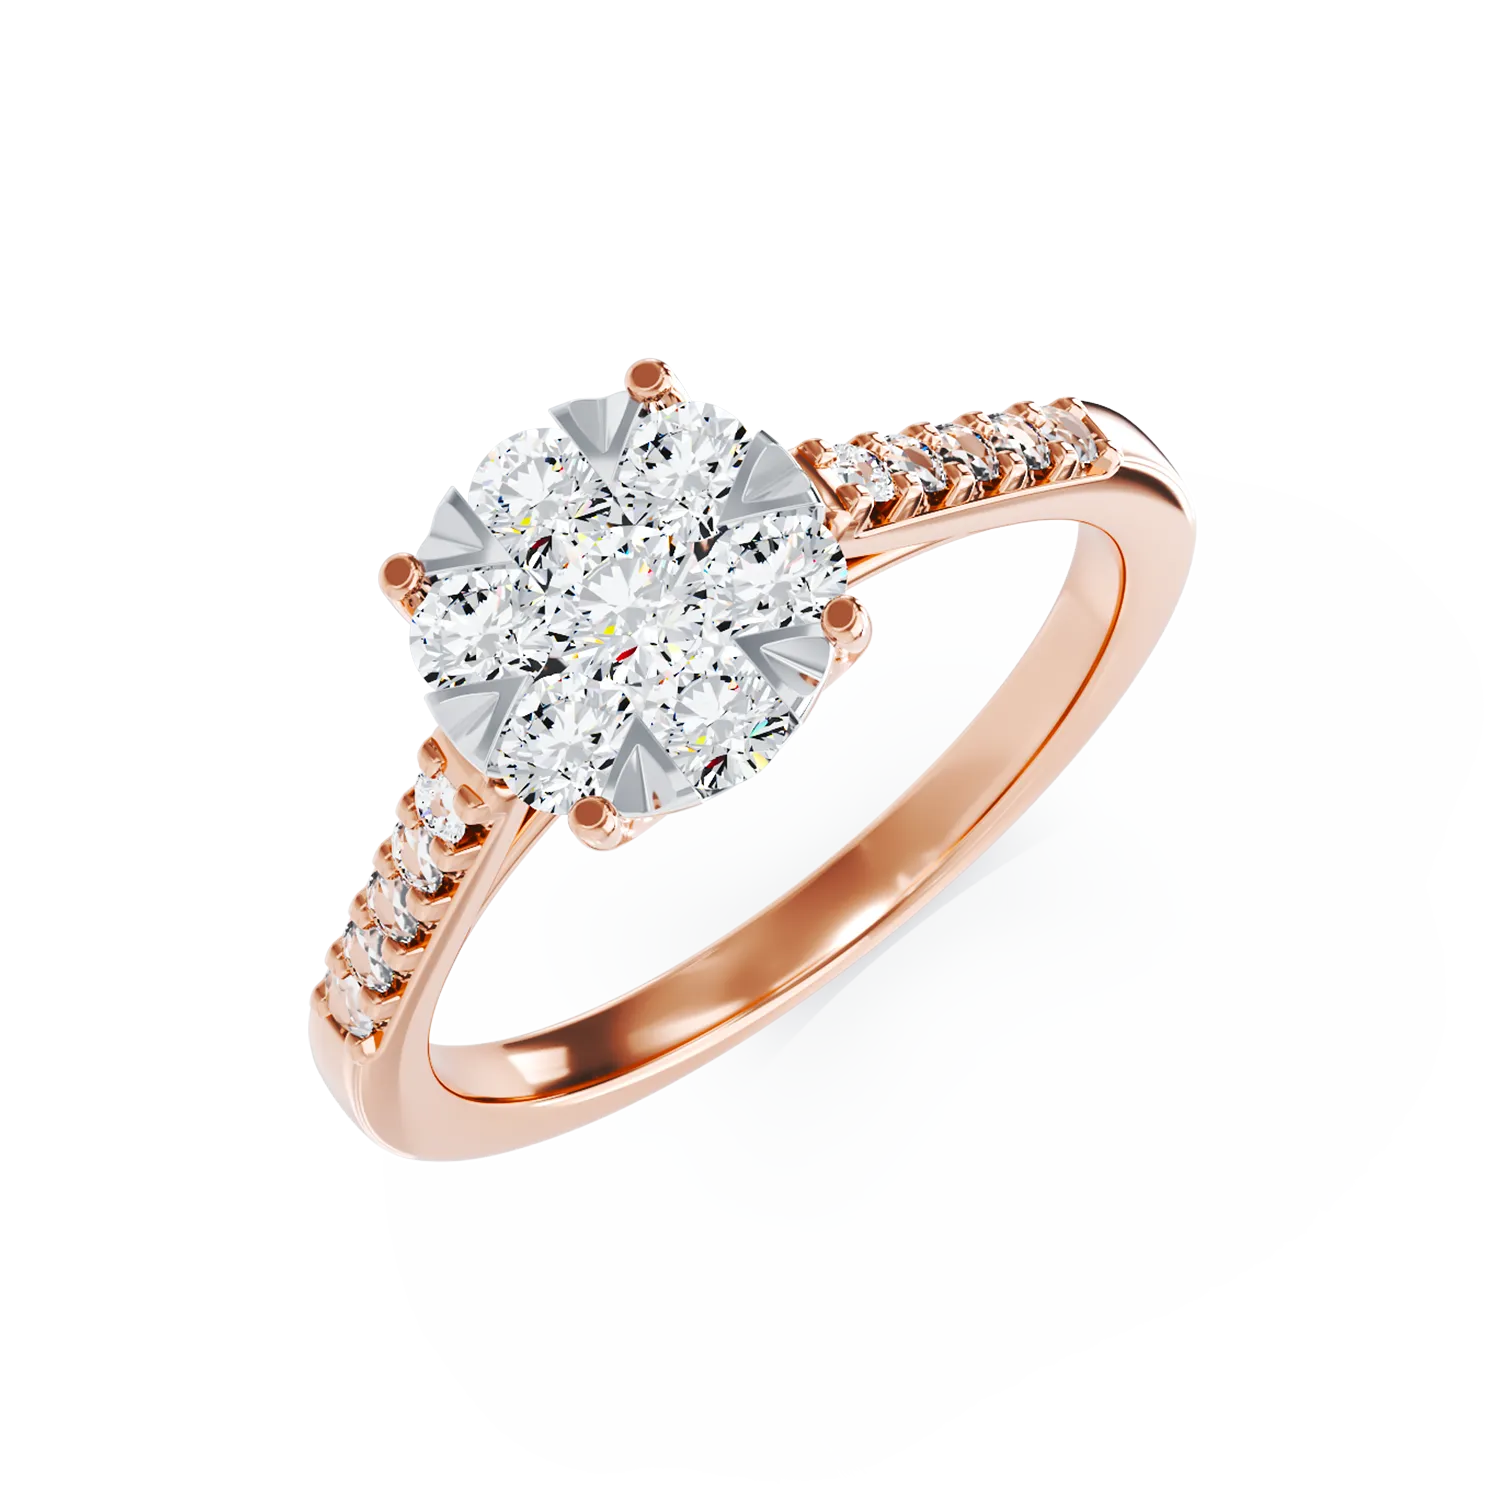 Eljegyzési gyűrű 18K-os rózsaszín aranyból 0,5ct gyémánttal. Gramm: 1,85